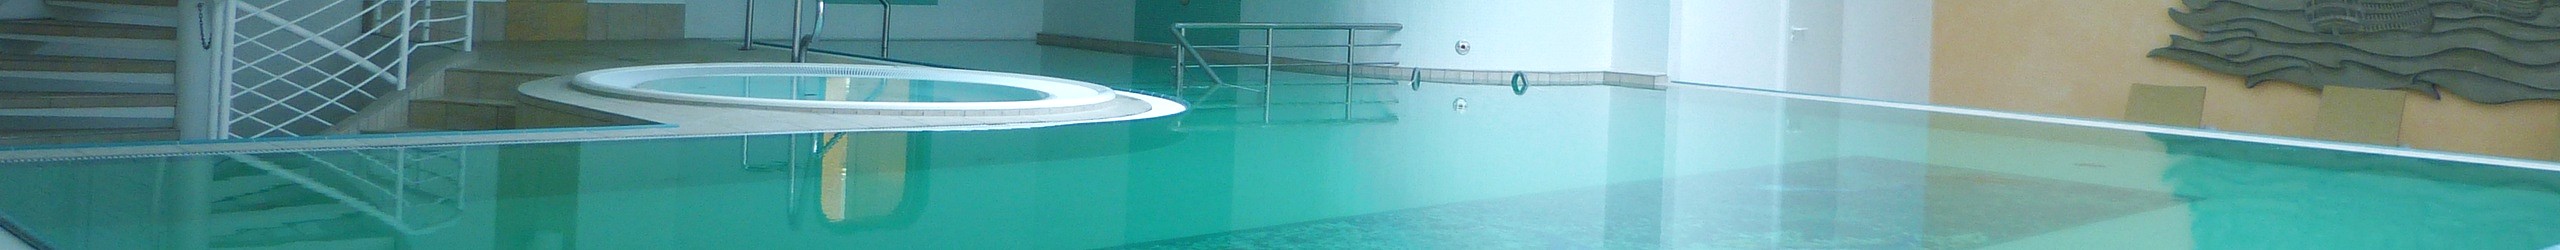 Schwimmbad Trafalgar